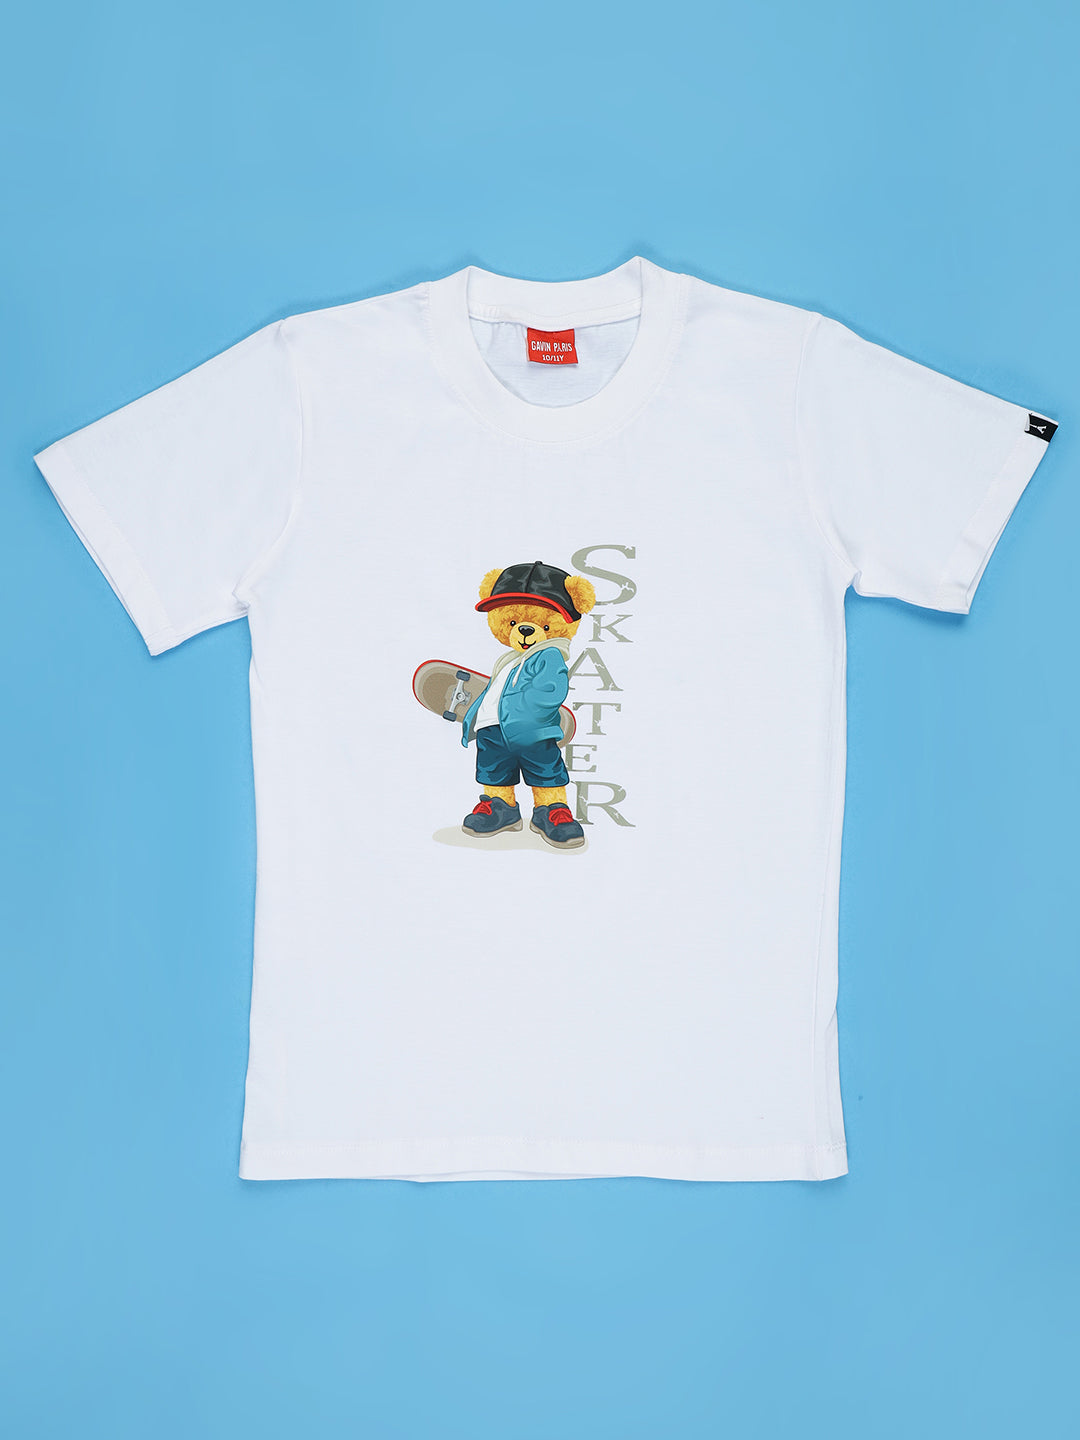 Skater T-shirts for Boys & Girls